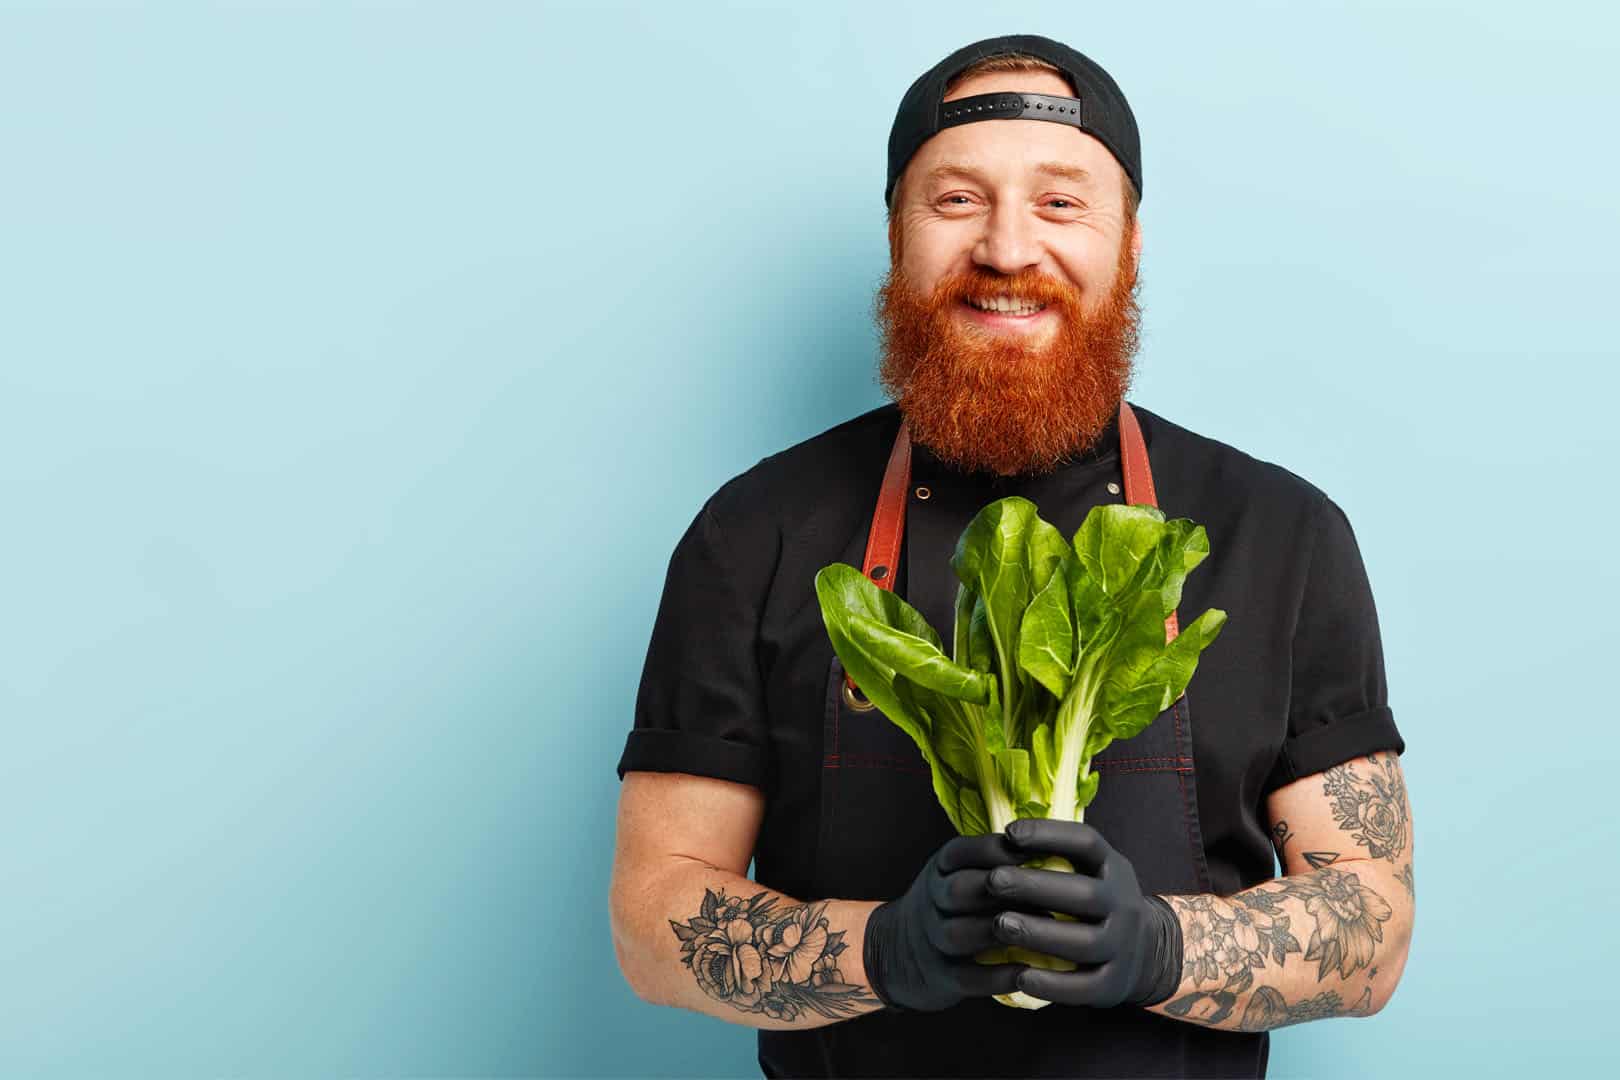 Mann mit Bart und Gemüse